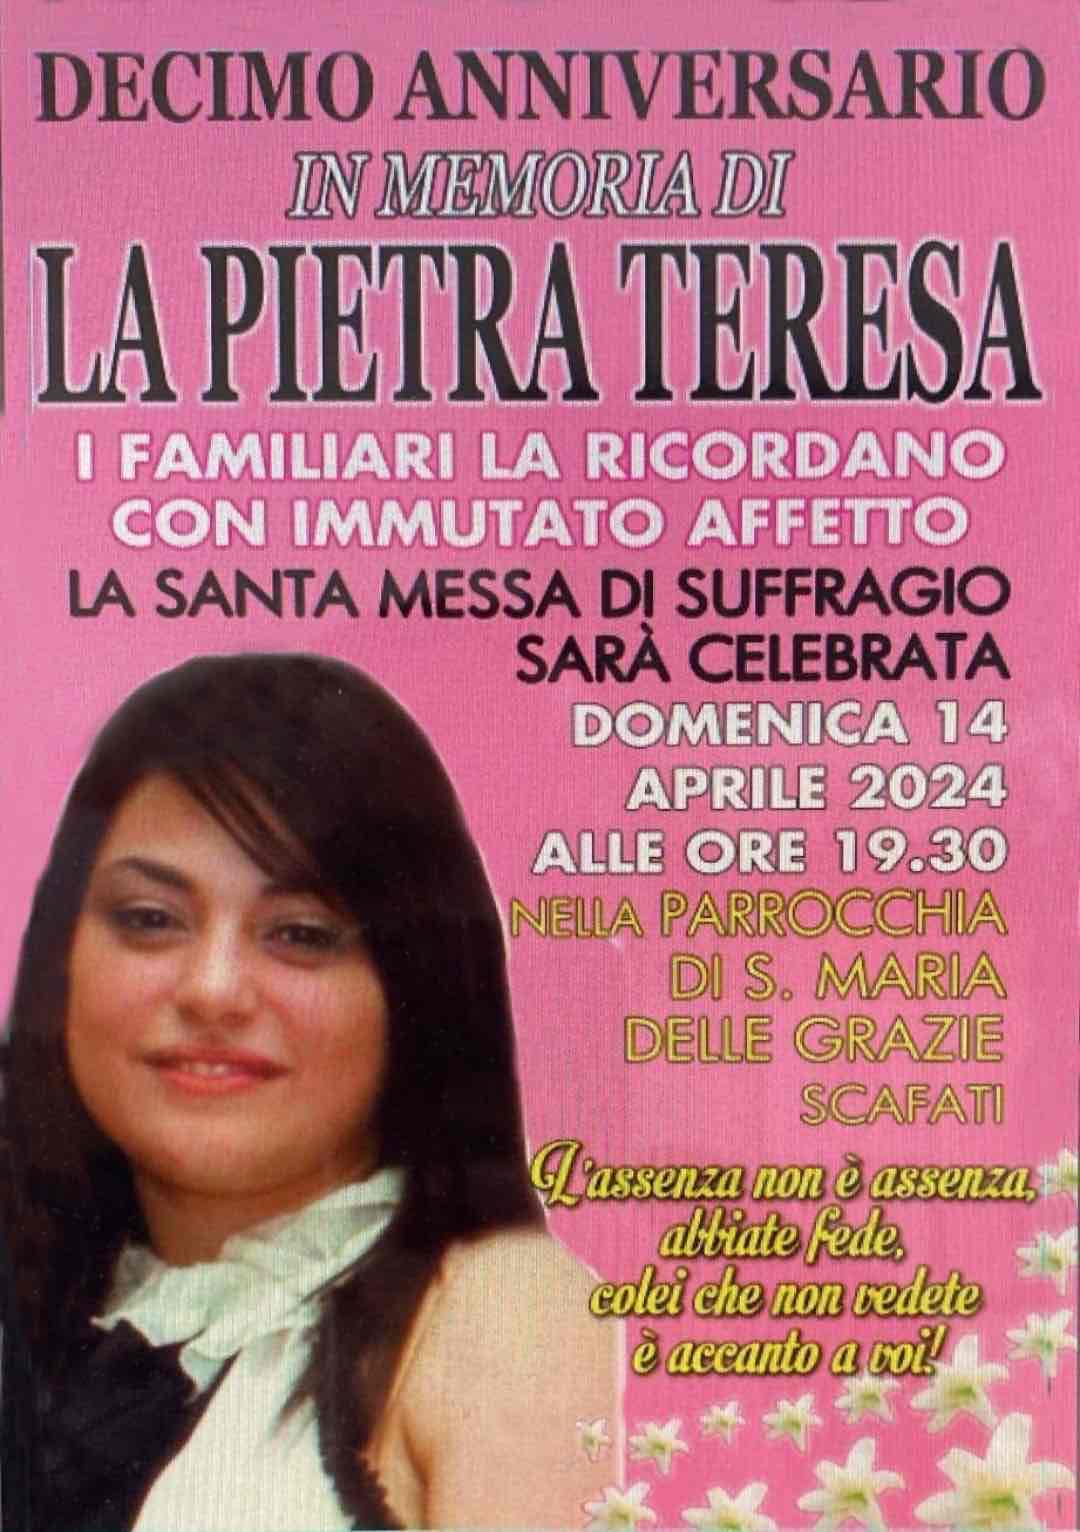 Teresa la Pietra